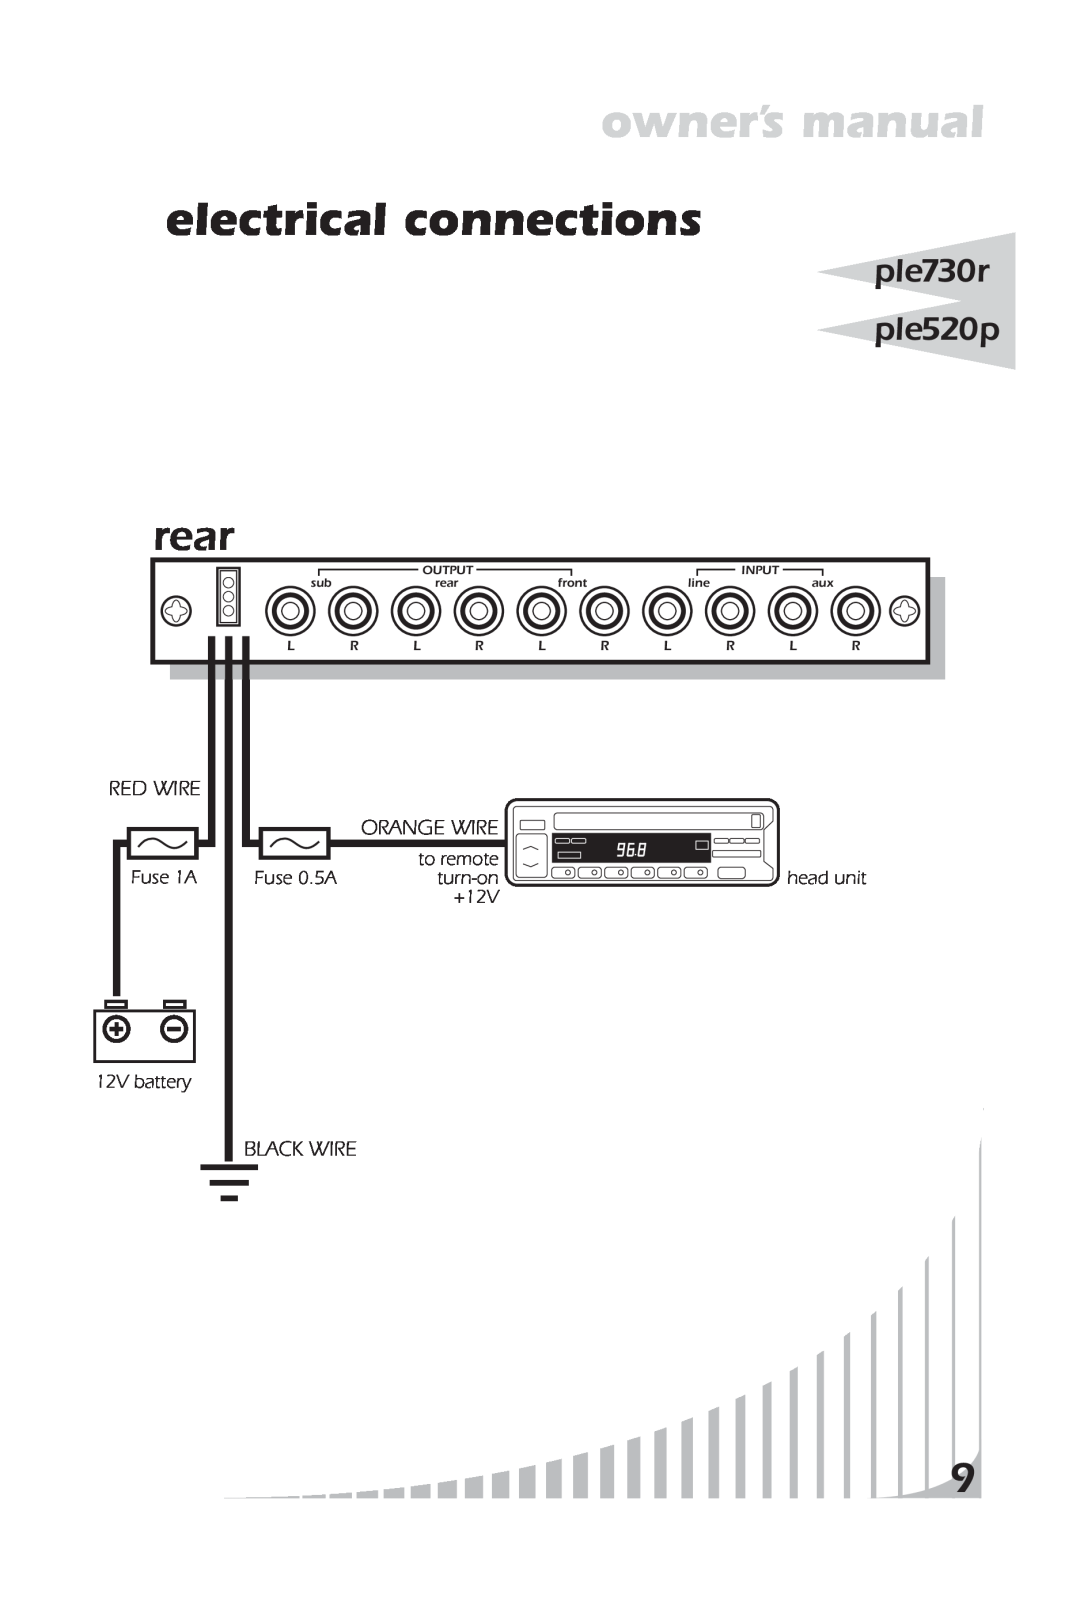 PYLE Audio PLE520P, PLE730R owner manual electrical connections, rear, ple730r ple520p, Input, front, line, Output 